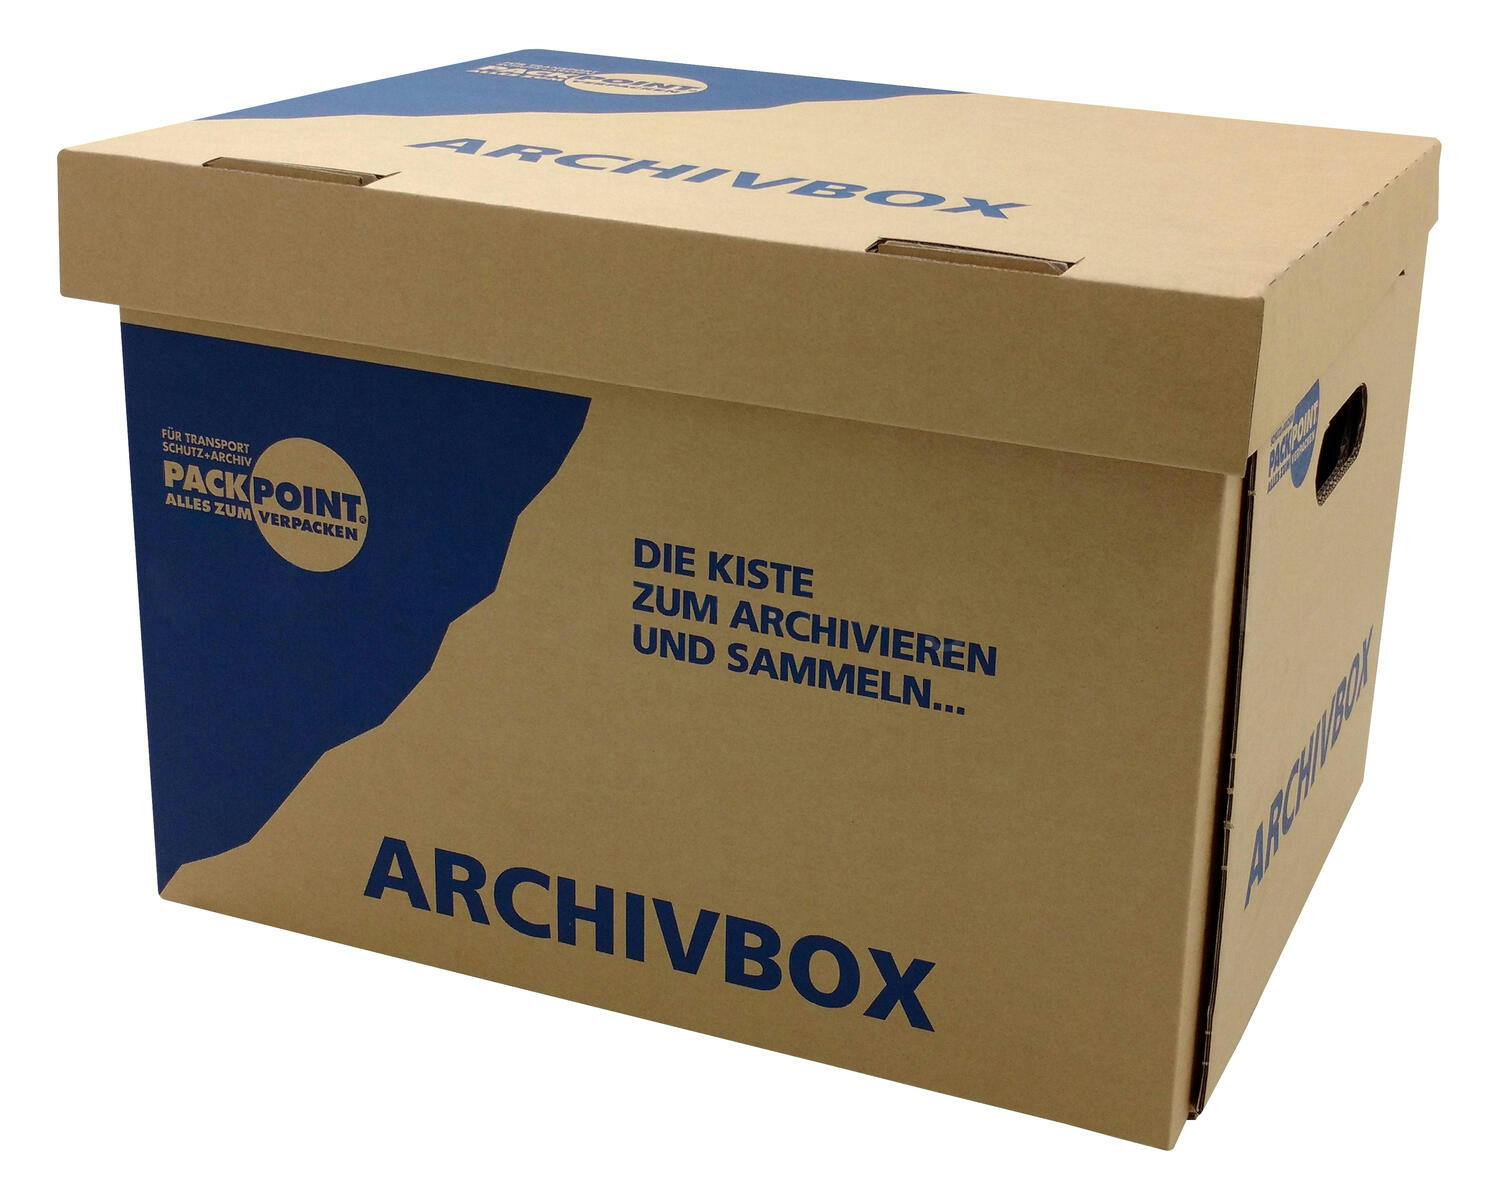 10x Aufbewahrung Archivbox 400x320x290mm stabil stapelbar Keller Dachboden Büro 